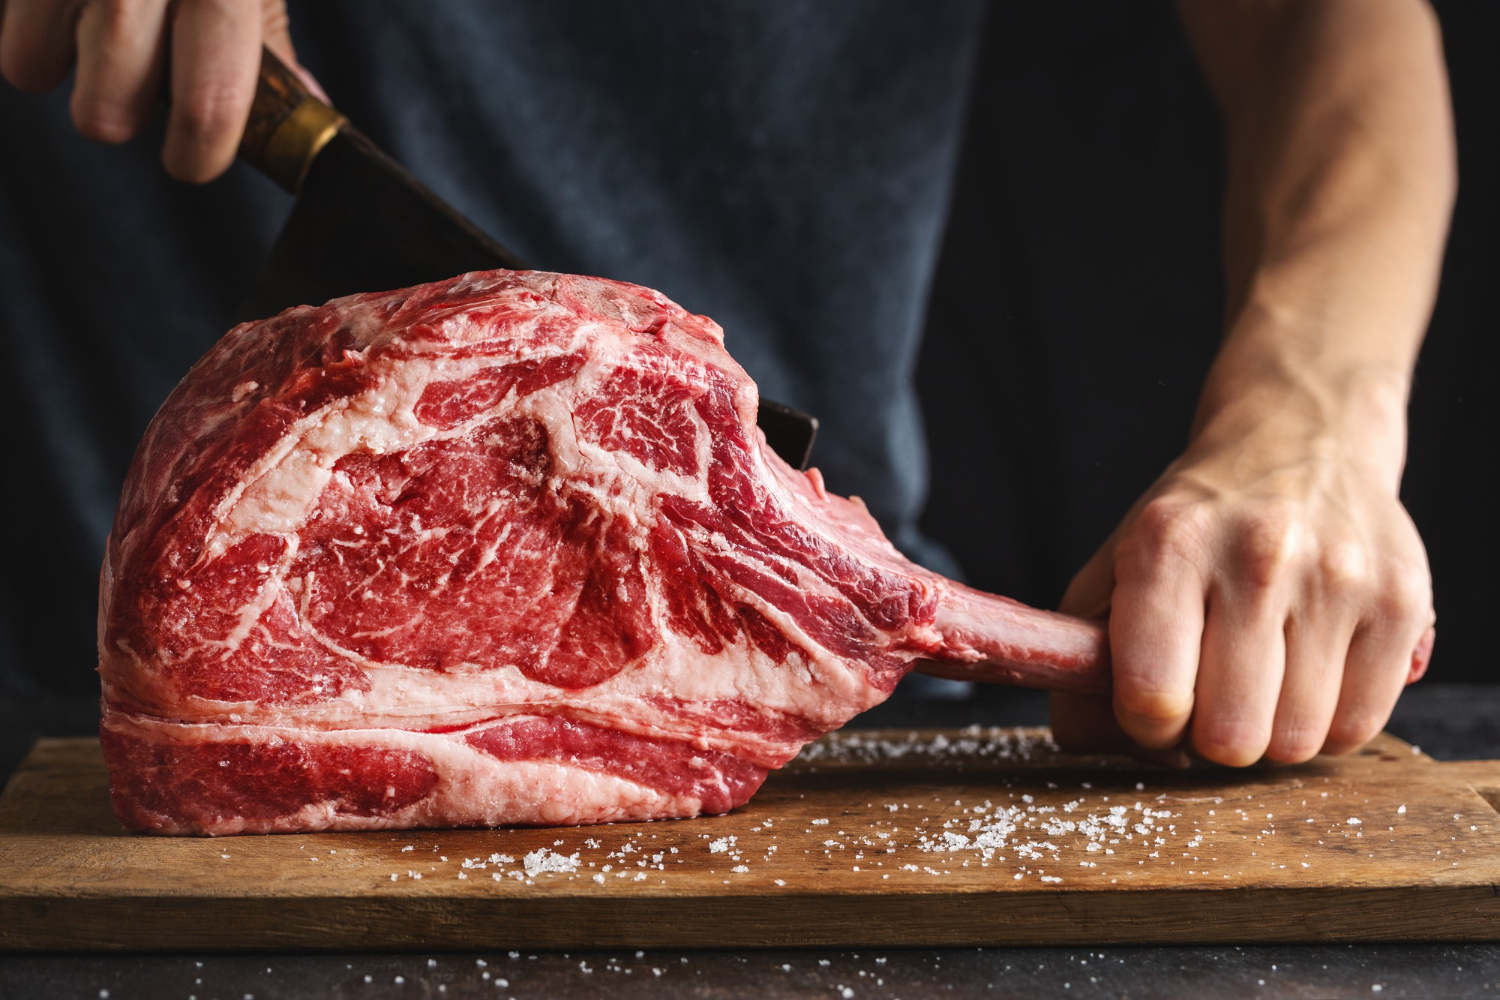 krojenie mięsa - warto przestać jeść mięso